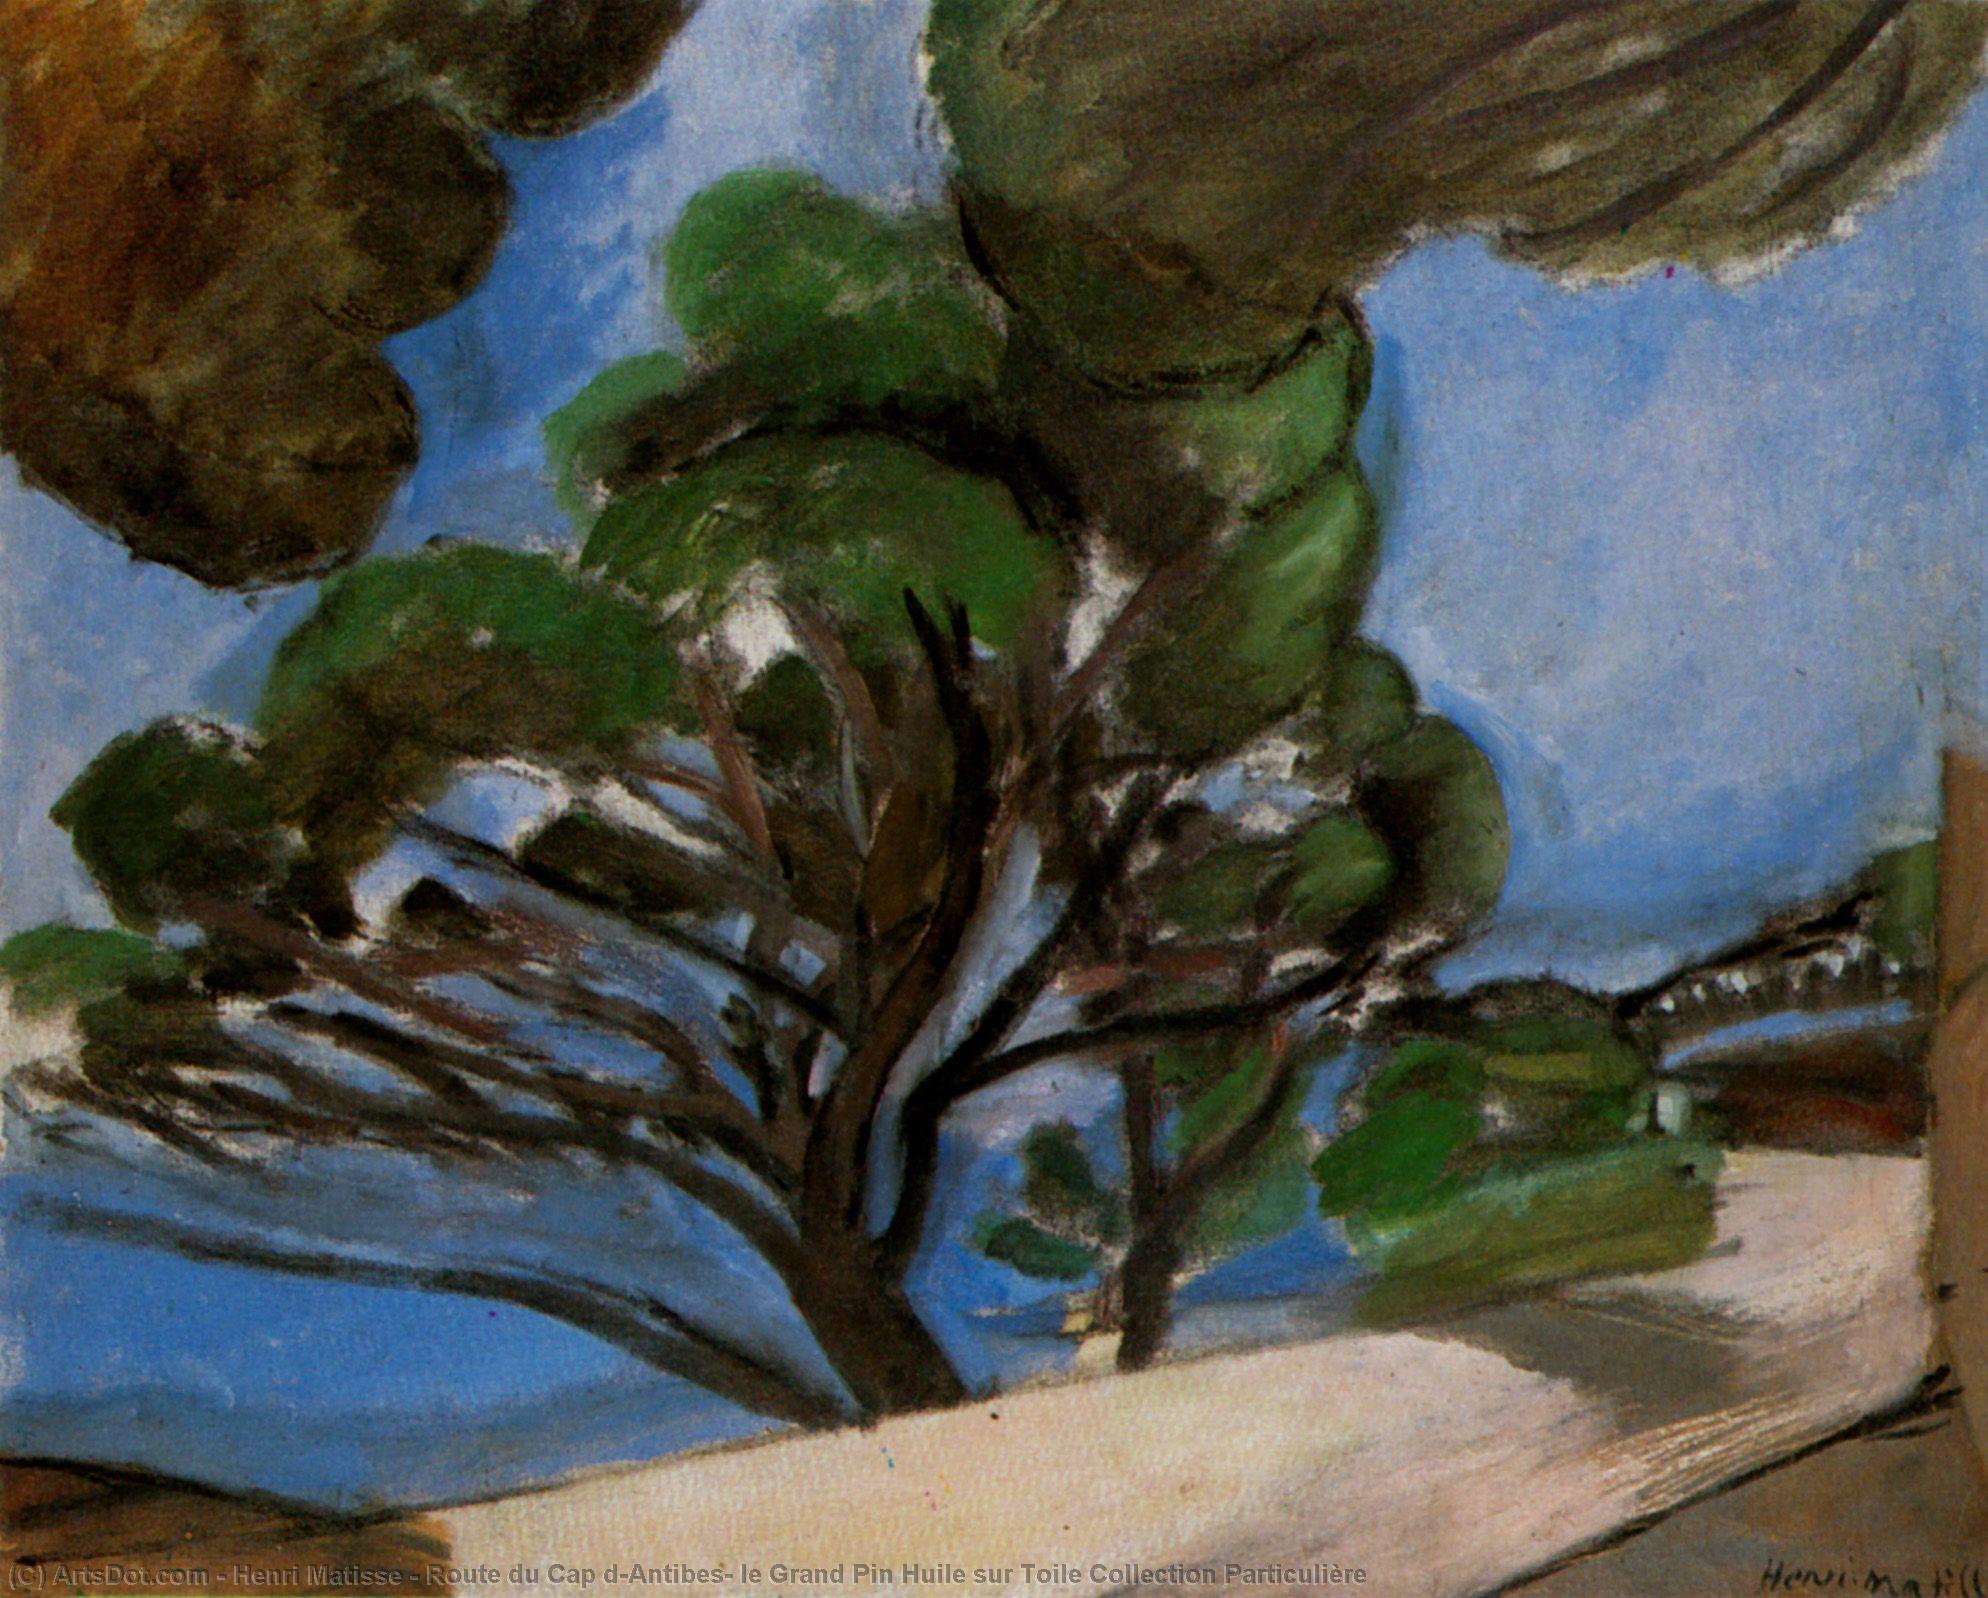 Wikioo.org - Bách khoa toàn thư về mỹ thuật - Vẽ tranh, Tác phẩm nghệ thuật Henri Matisse - Route du Cap d'Antibes, le Grand Pin Huile sur Toile Collection Particulière